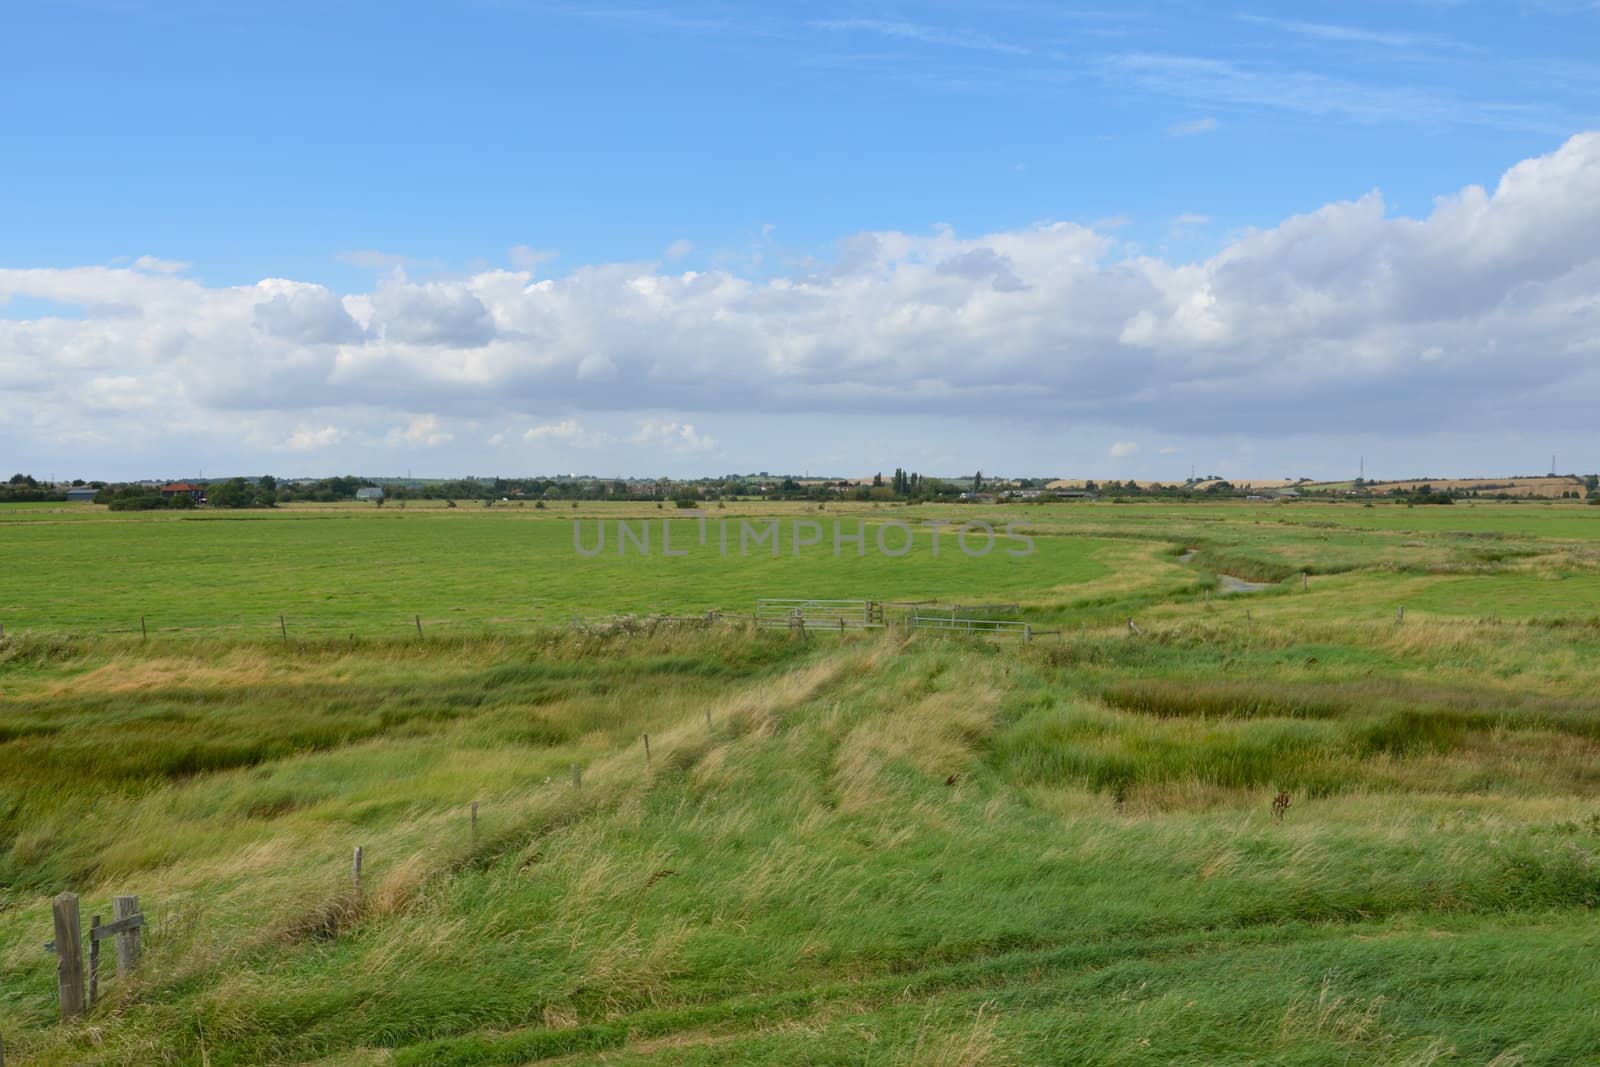 Essex Landscape by pauws99